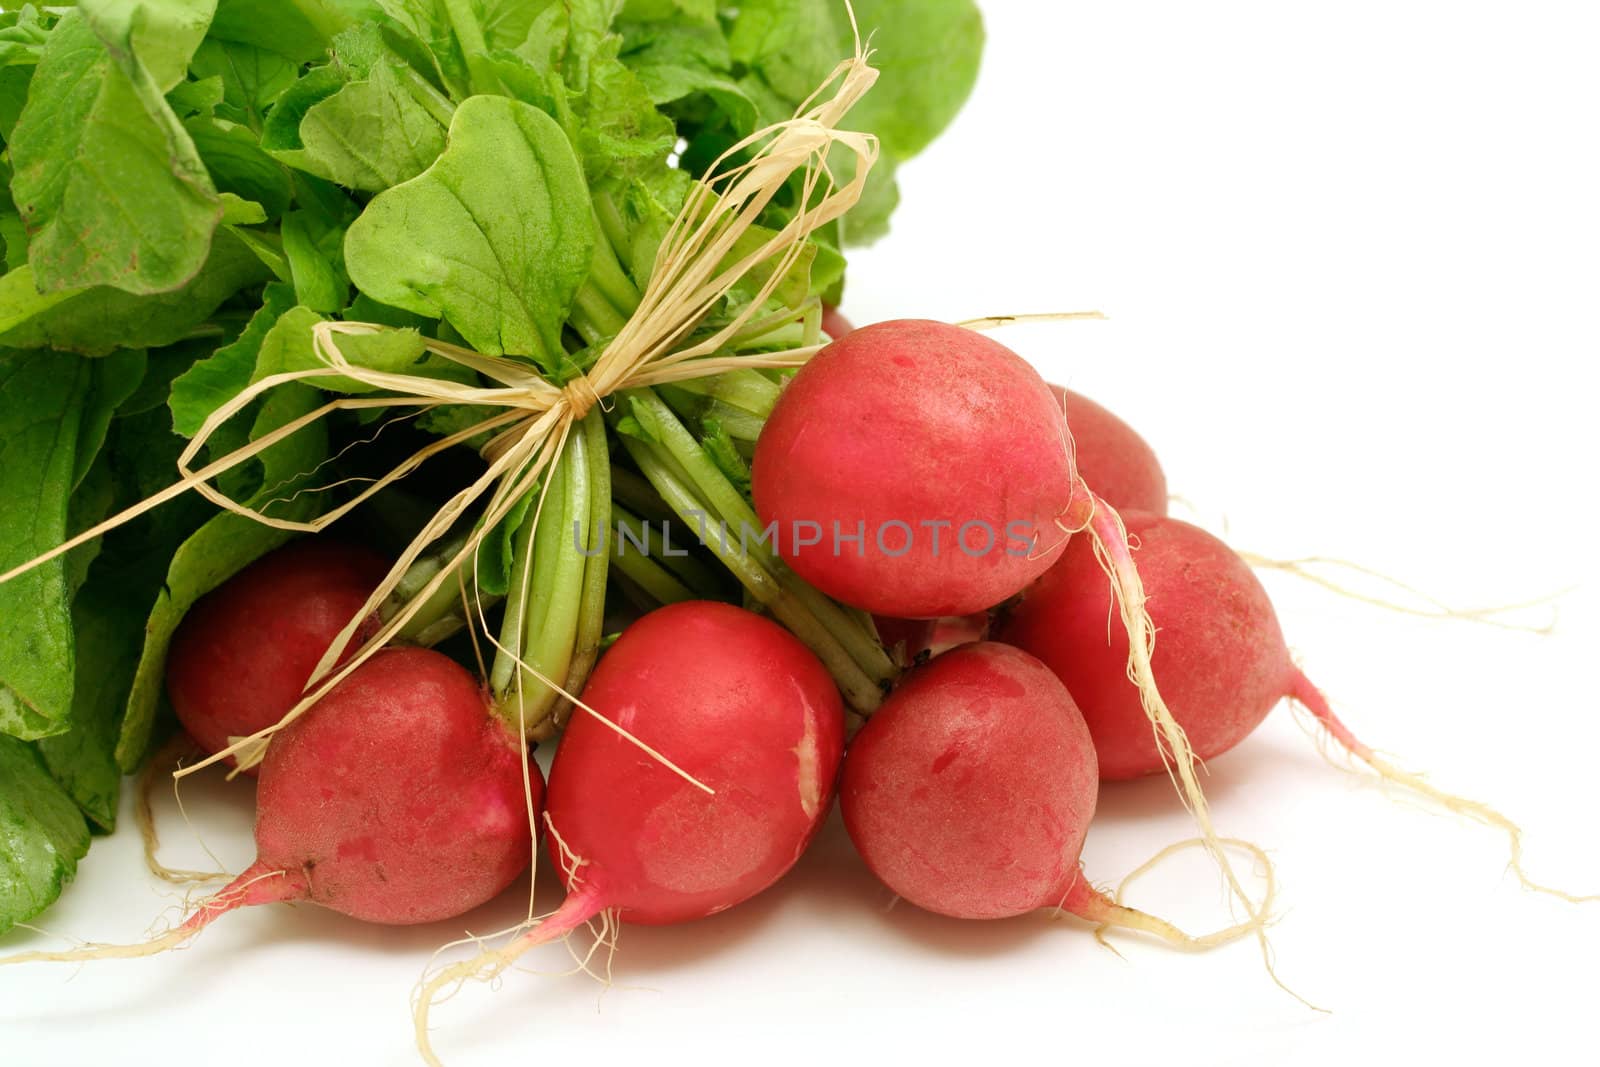 bundle of fresh radishes on white background